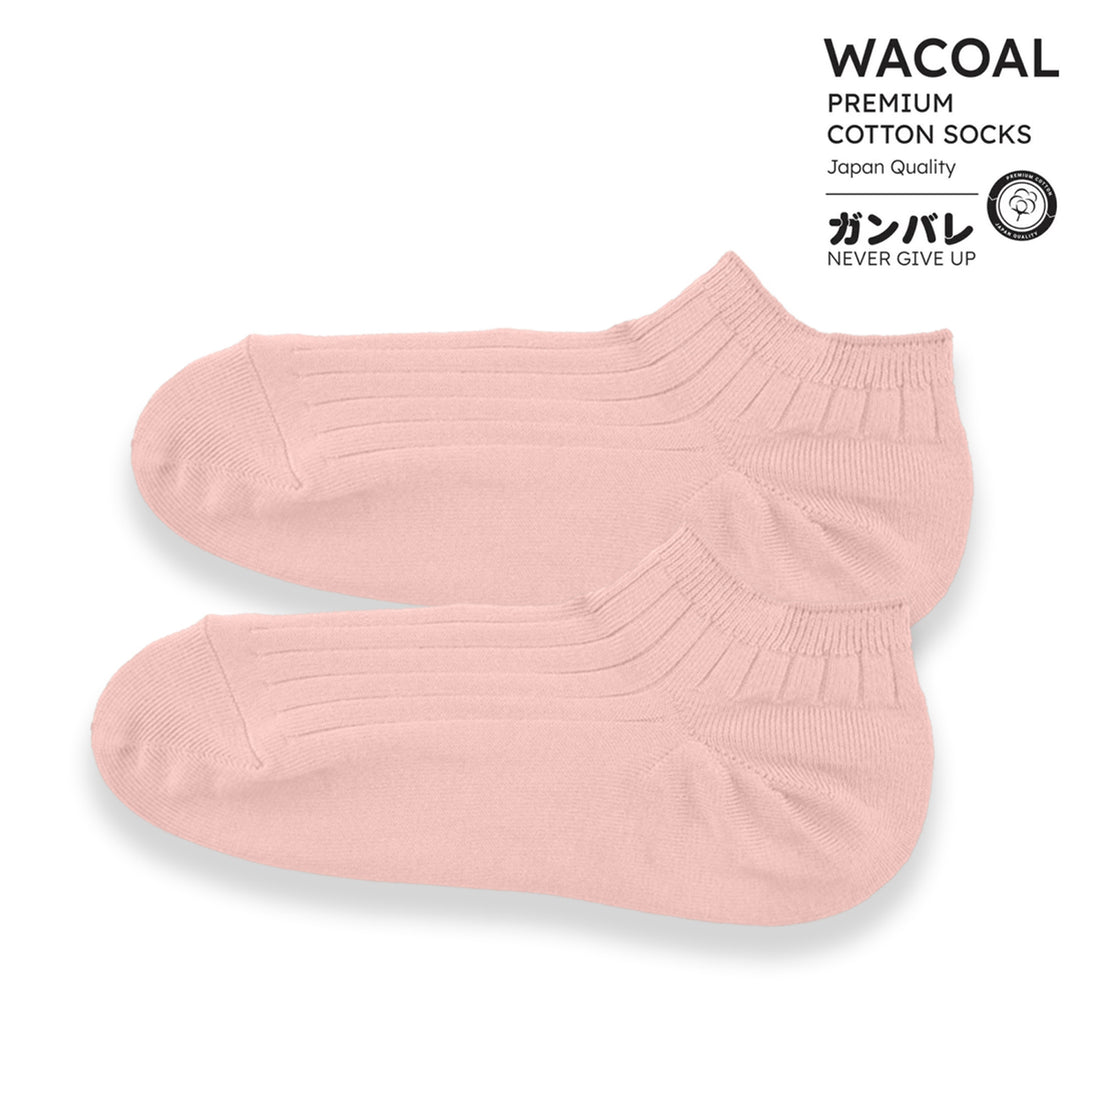 ถุงเท้าข้้อสั้น Cotton Socks Anti-bacteria รุ่น WW1106  สีชมพูดอกคาร์เนชั่น (CP)